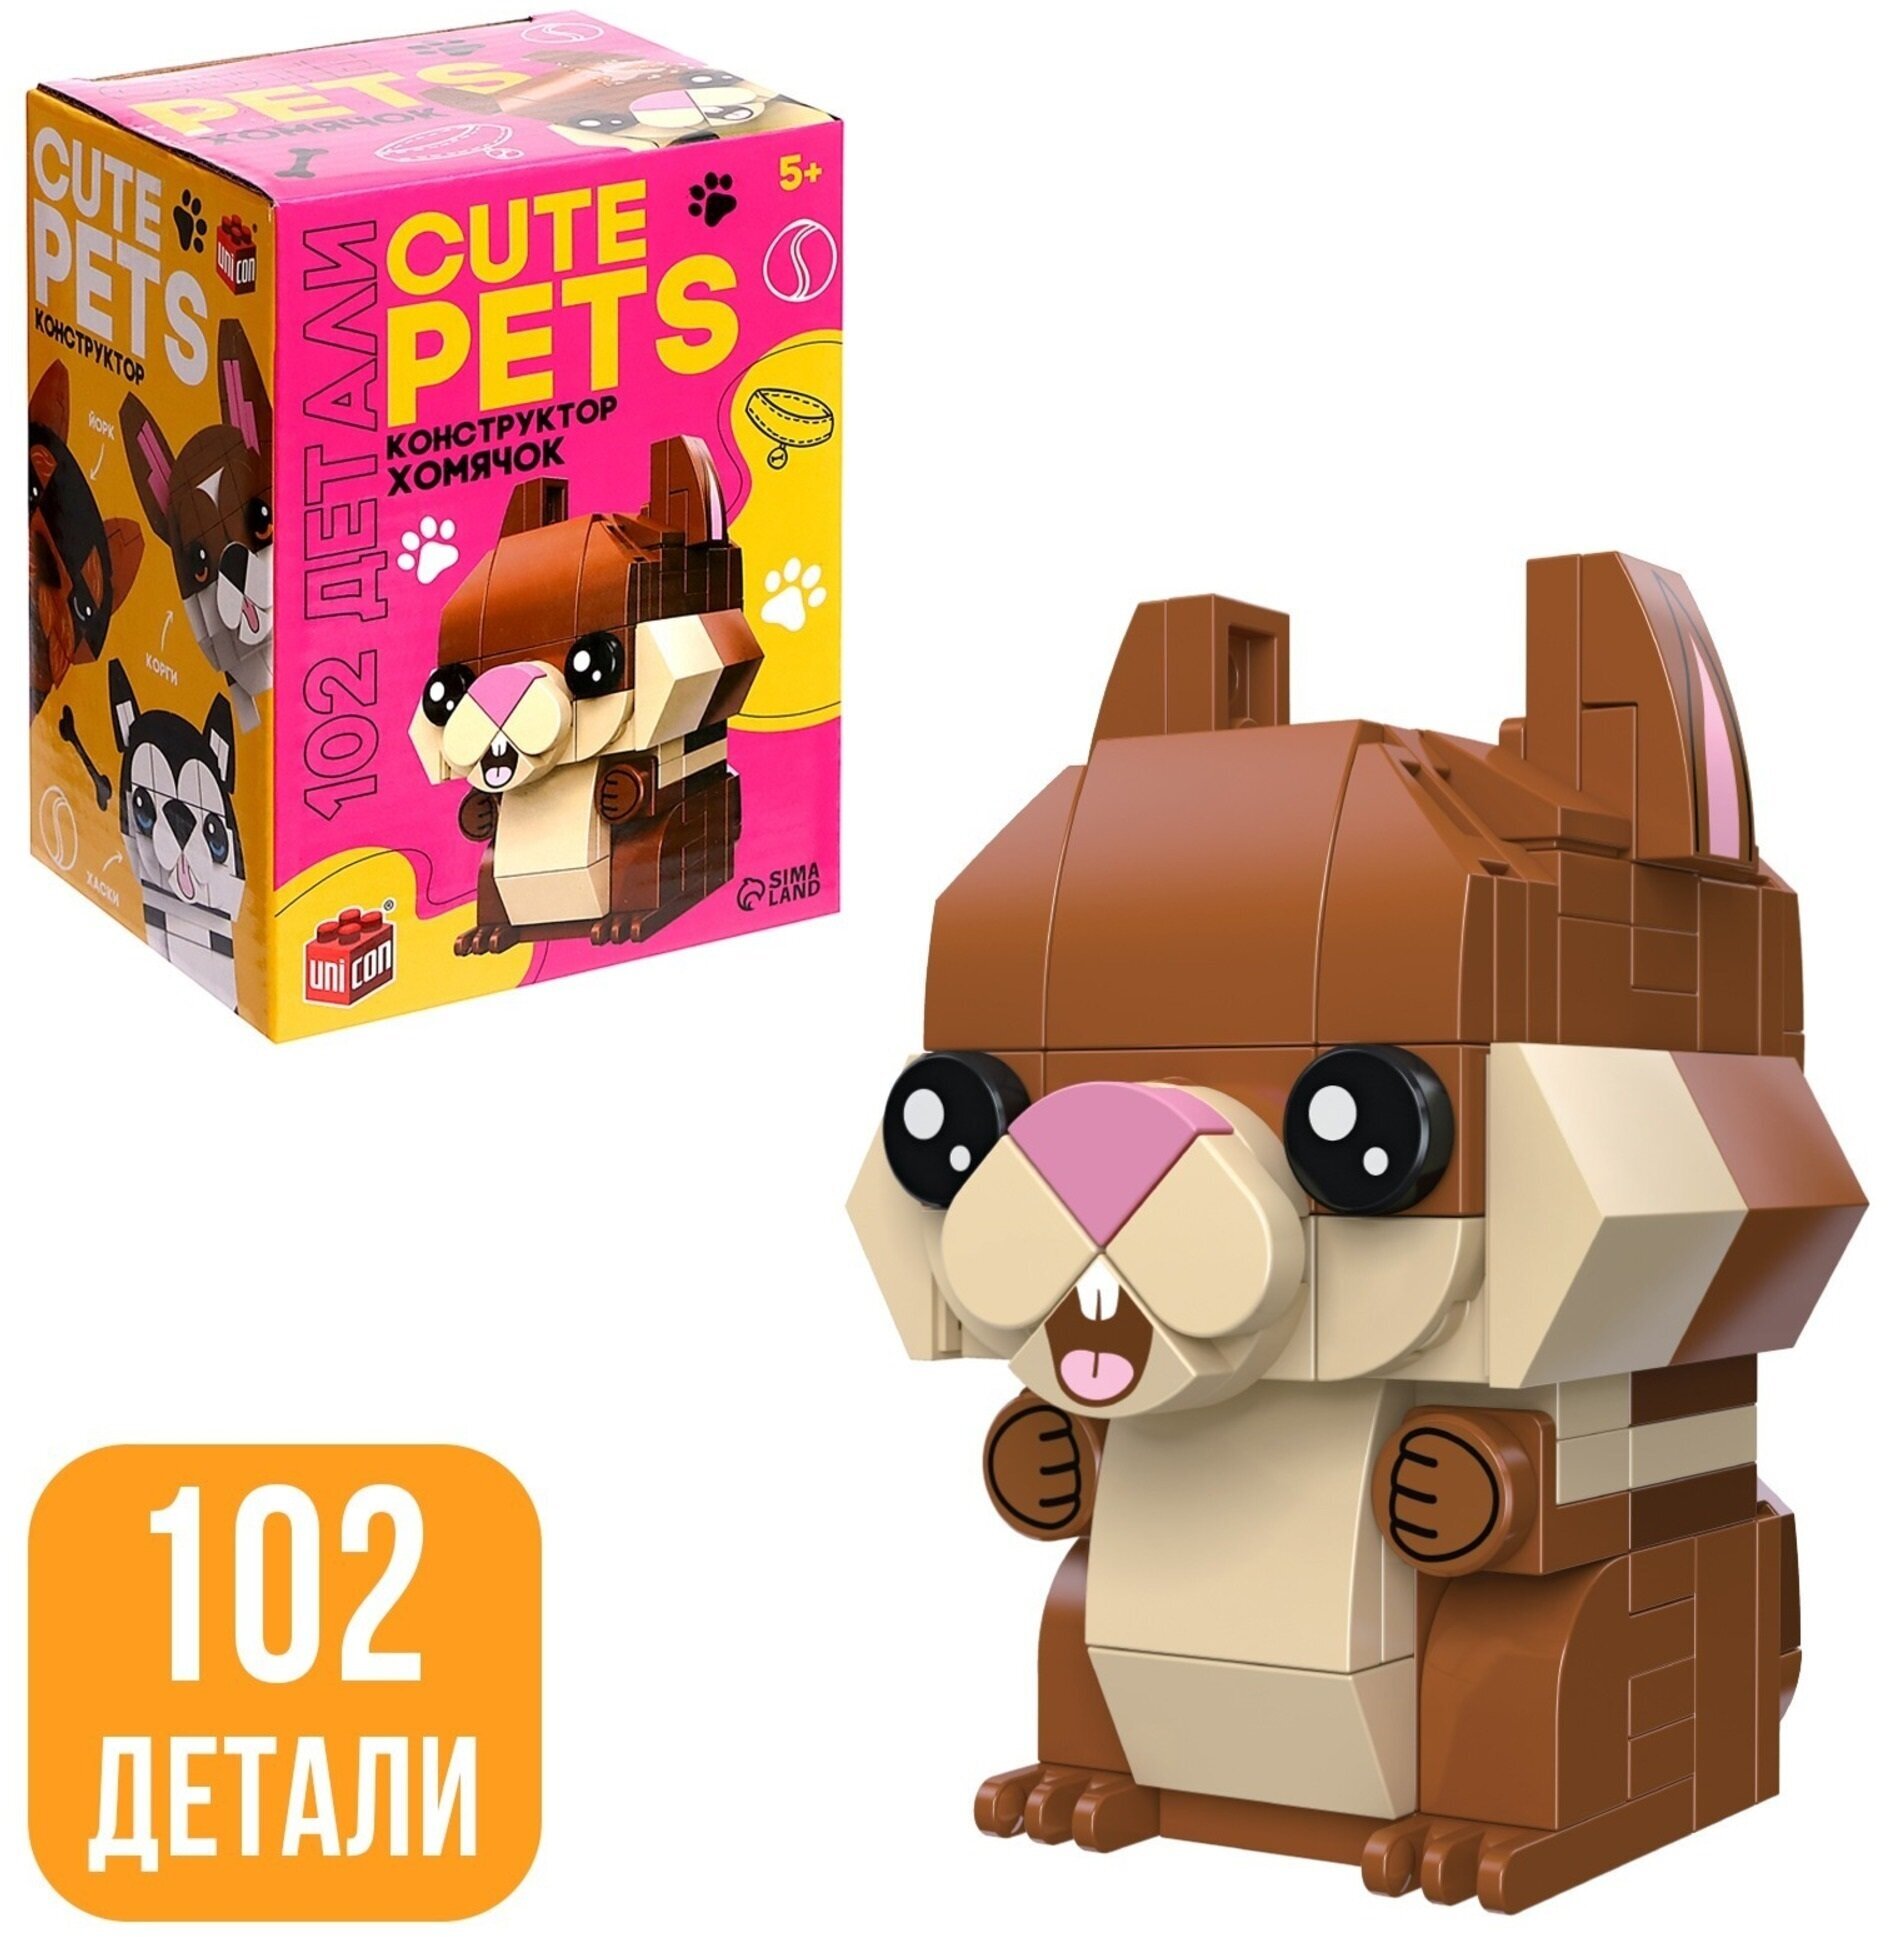 Детский блочный конструктор UNICON "Cute pets" Хомячок 102 детали для детей